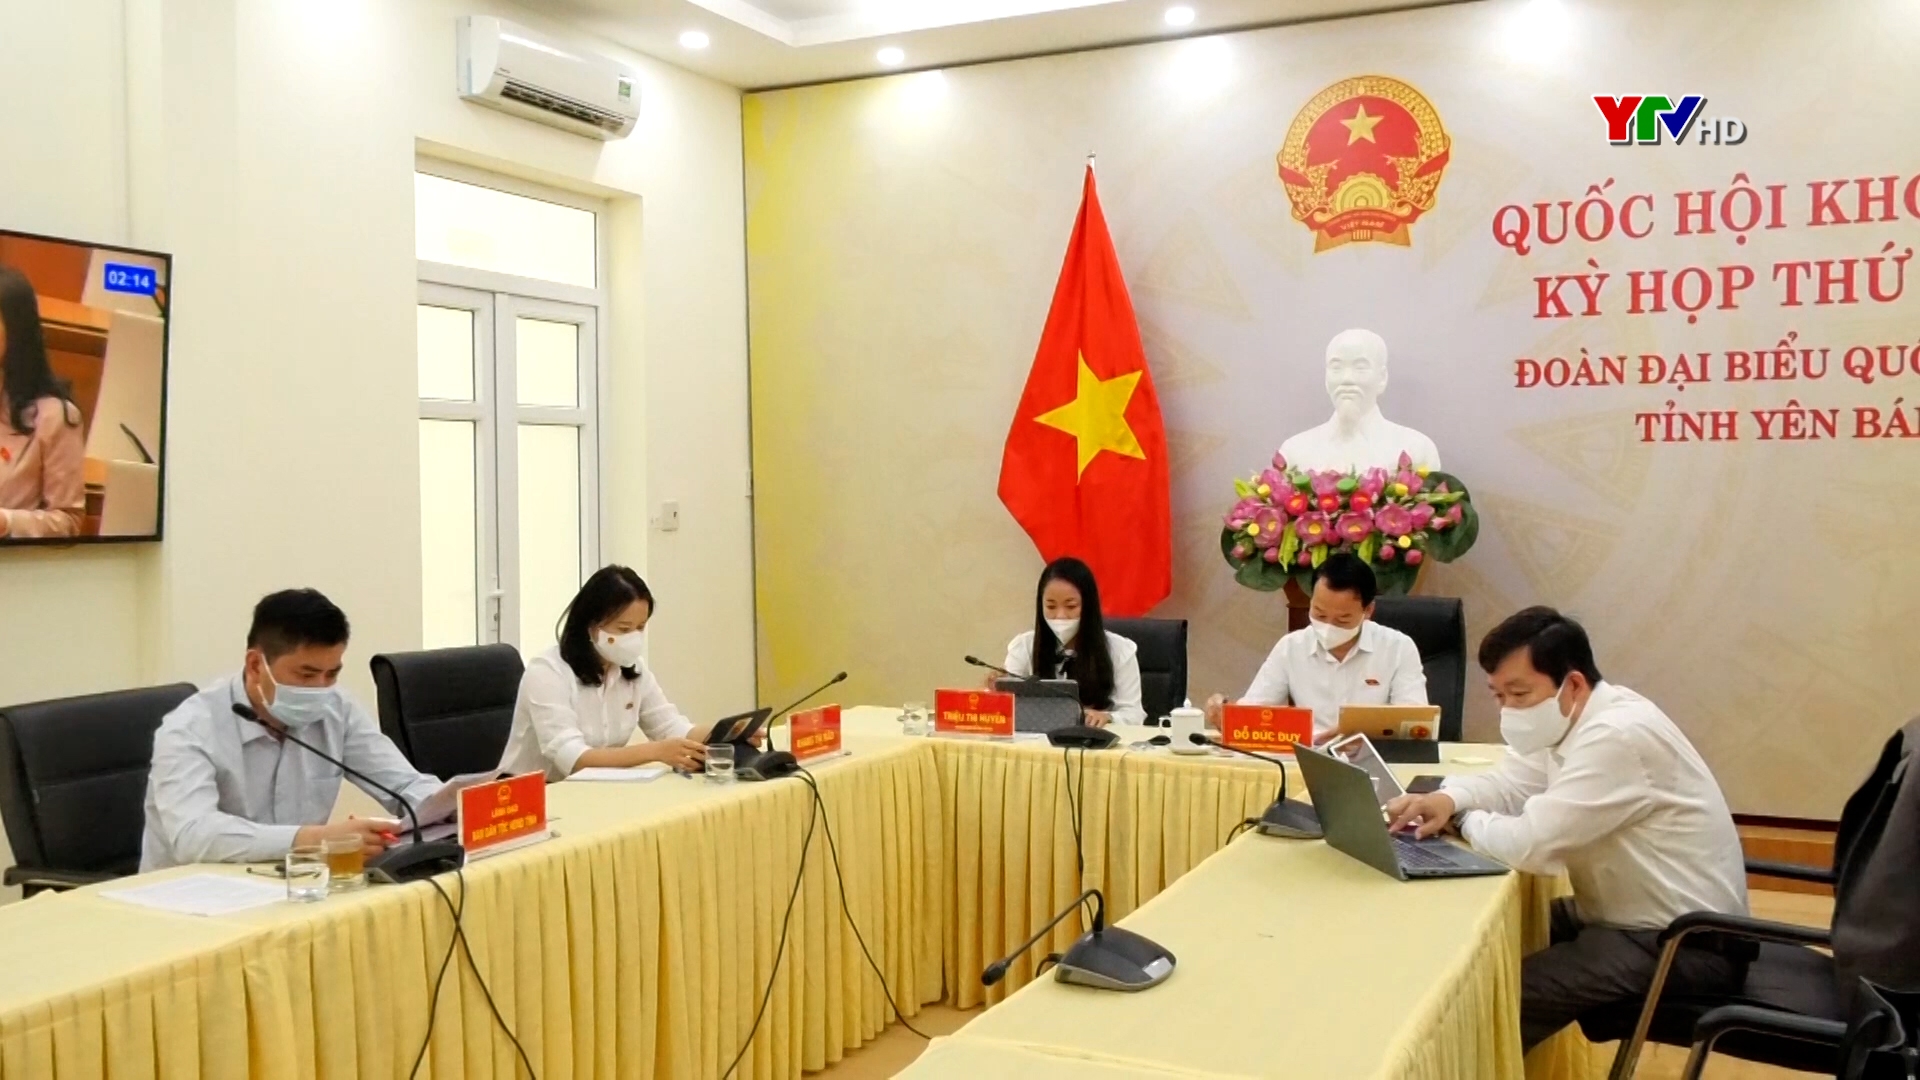 Đoàn Đại biểu Quốc hội tỉnh Yên Bái thảo luận trực tuyến về Luật Cảnh sát cơ động.